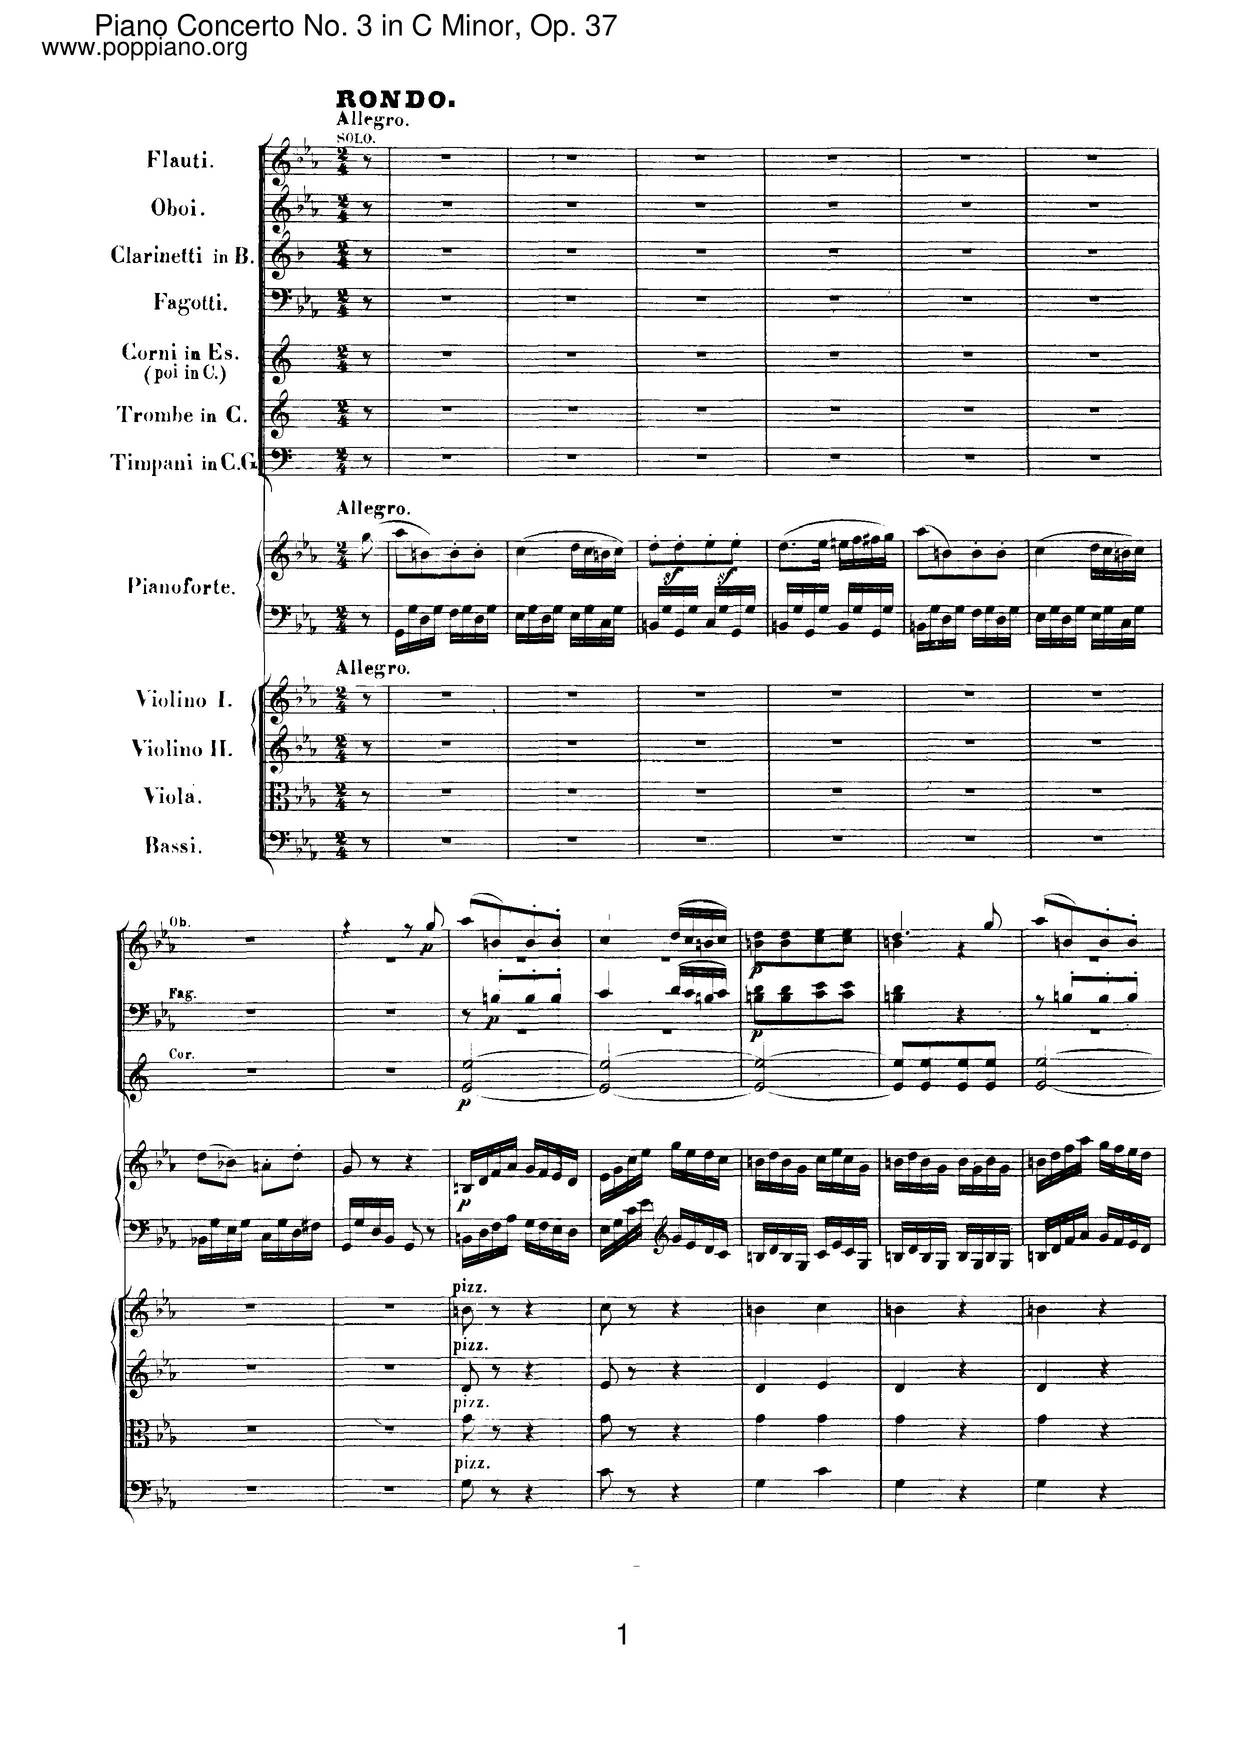 Piano Concerto No. 3 In C Minor, Op. 37 Score